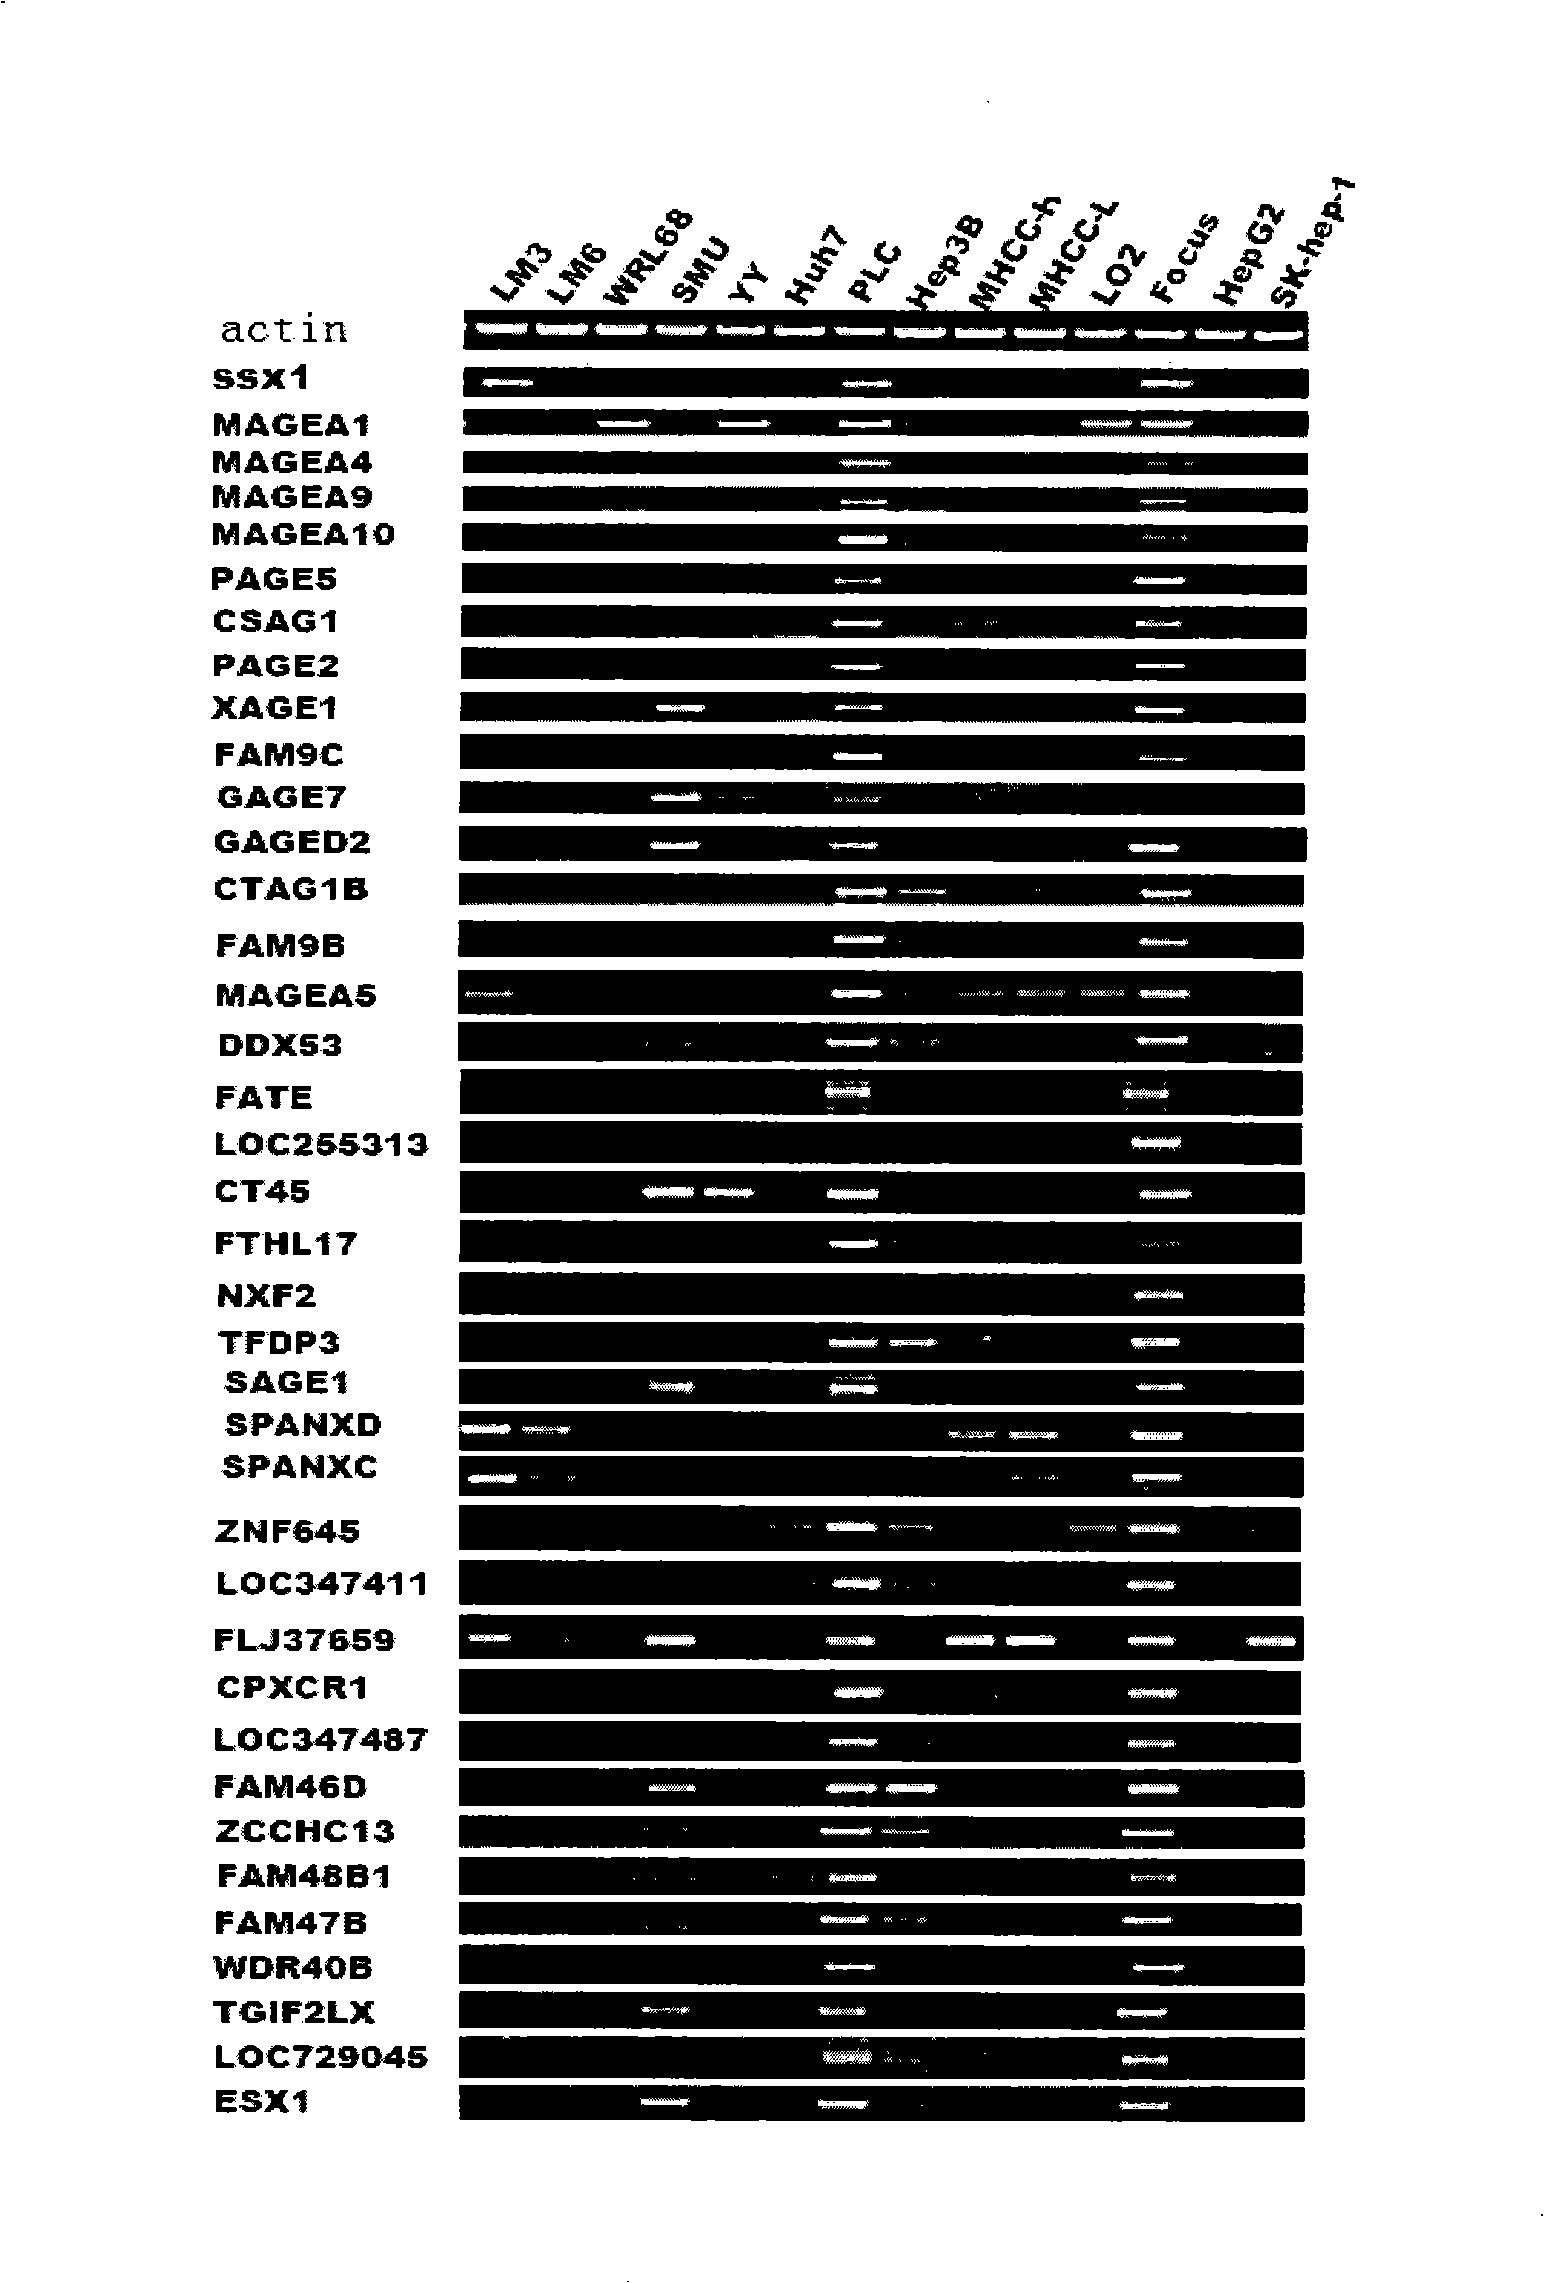 Uses of DUSP21 gene